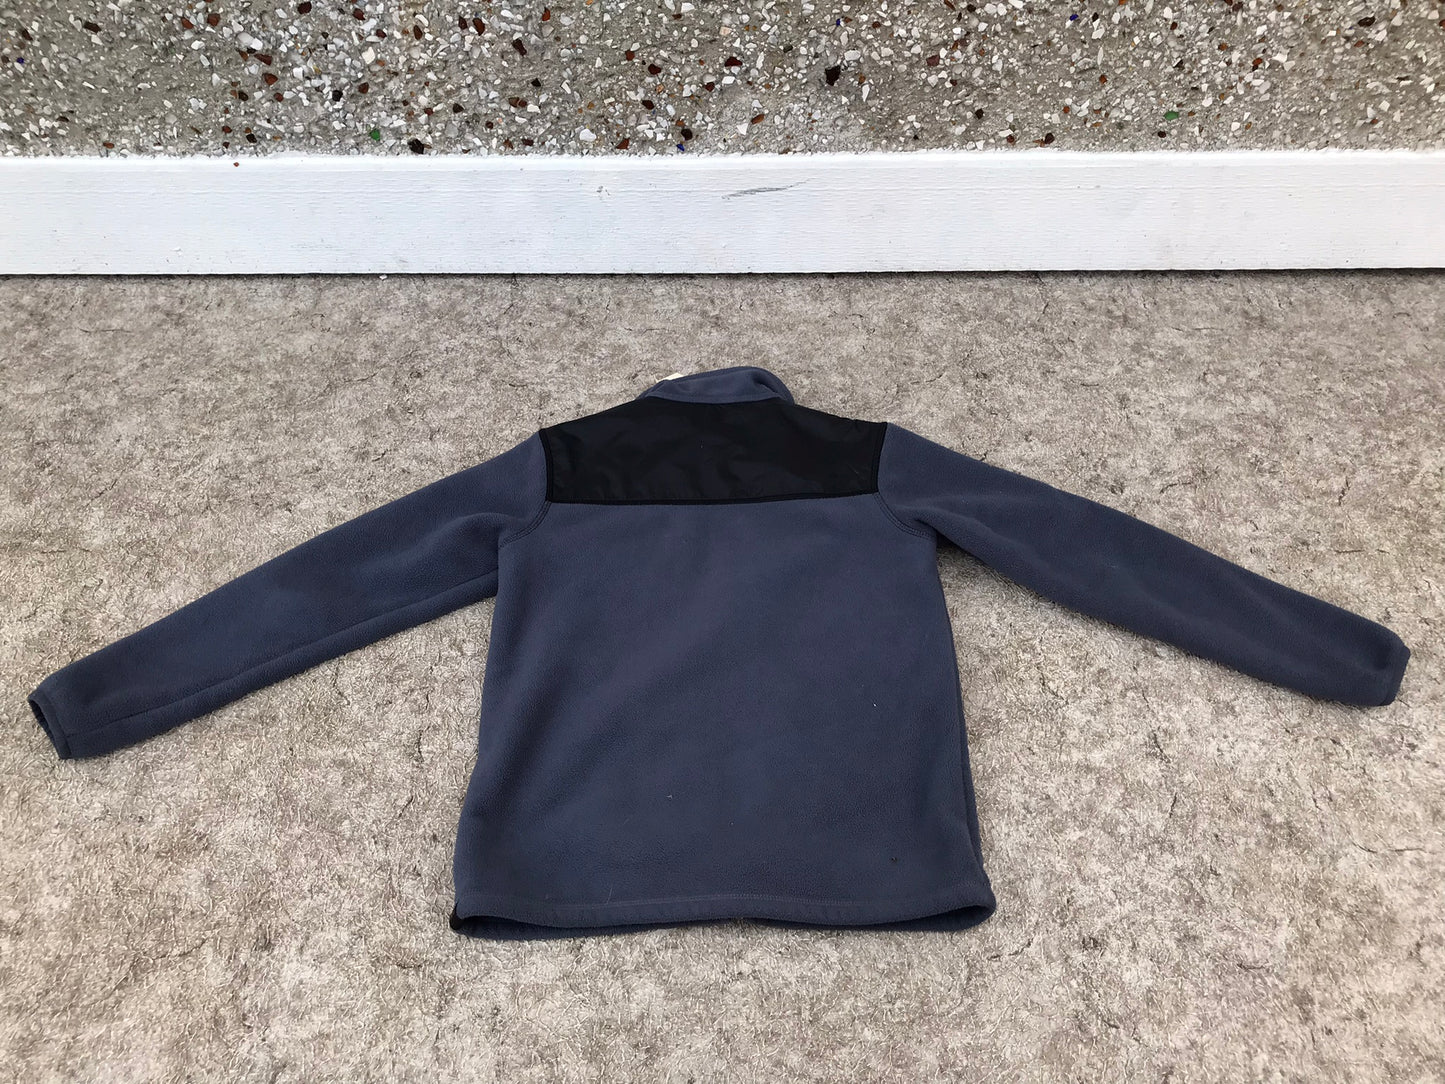 Winter Coat Child Size 8 MEC Fleece Zip Up Jacket Grey Blue As New